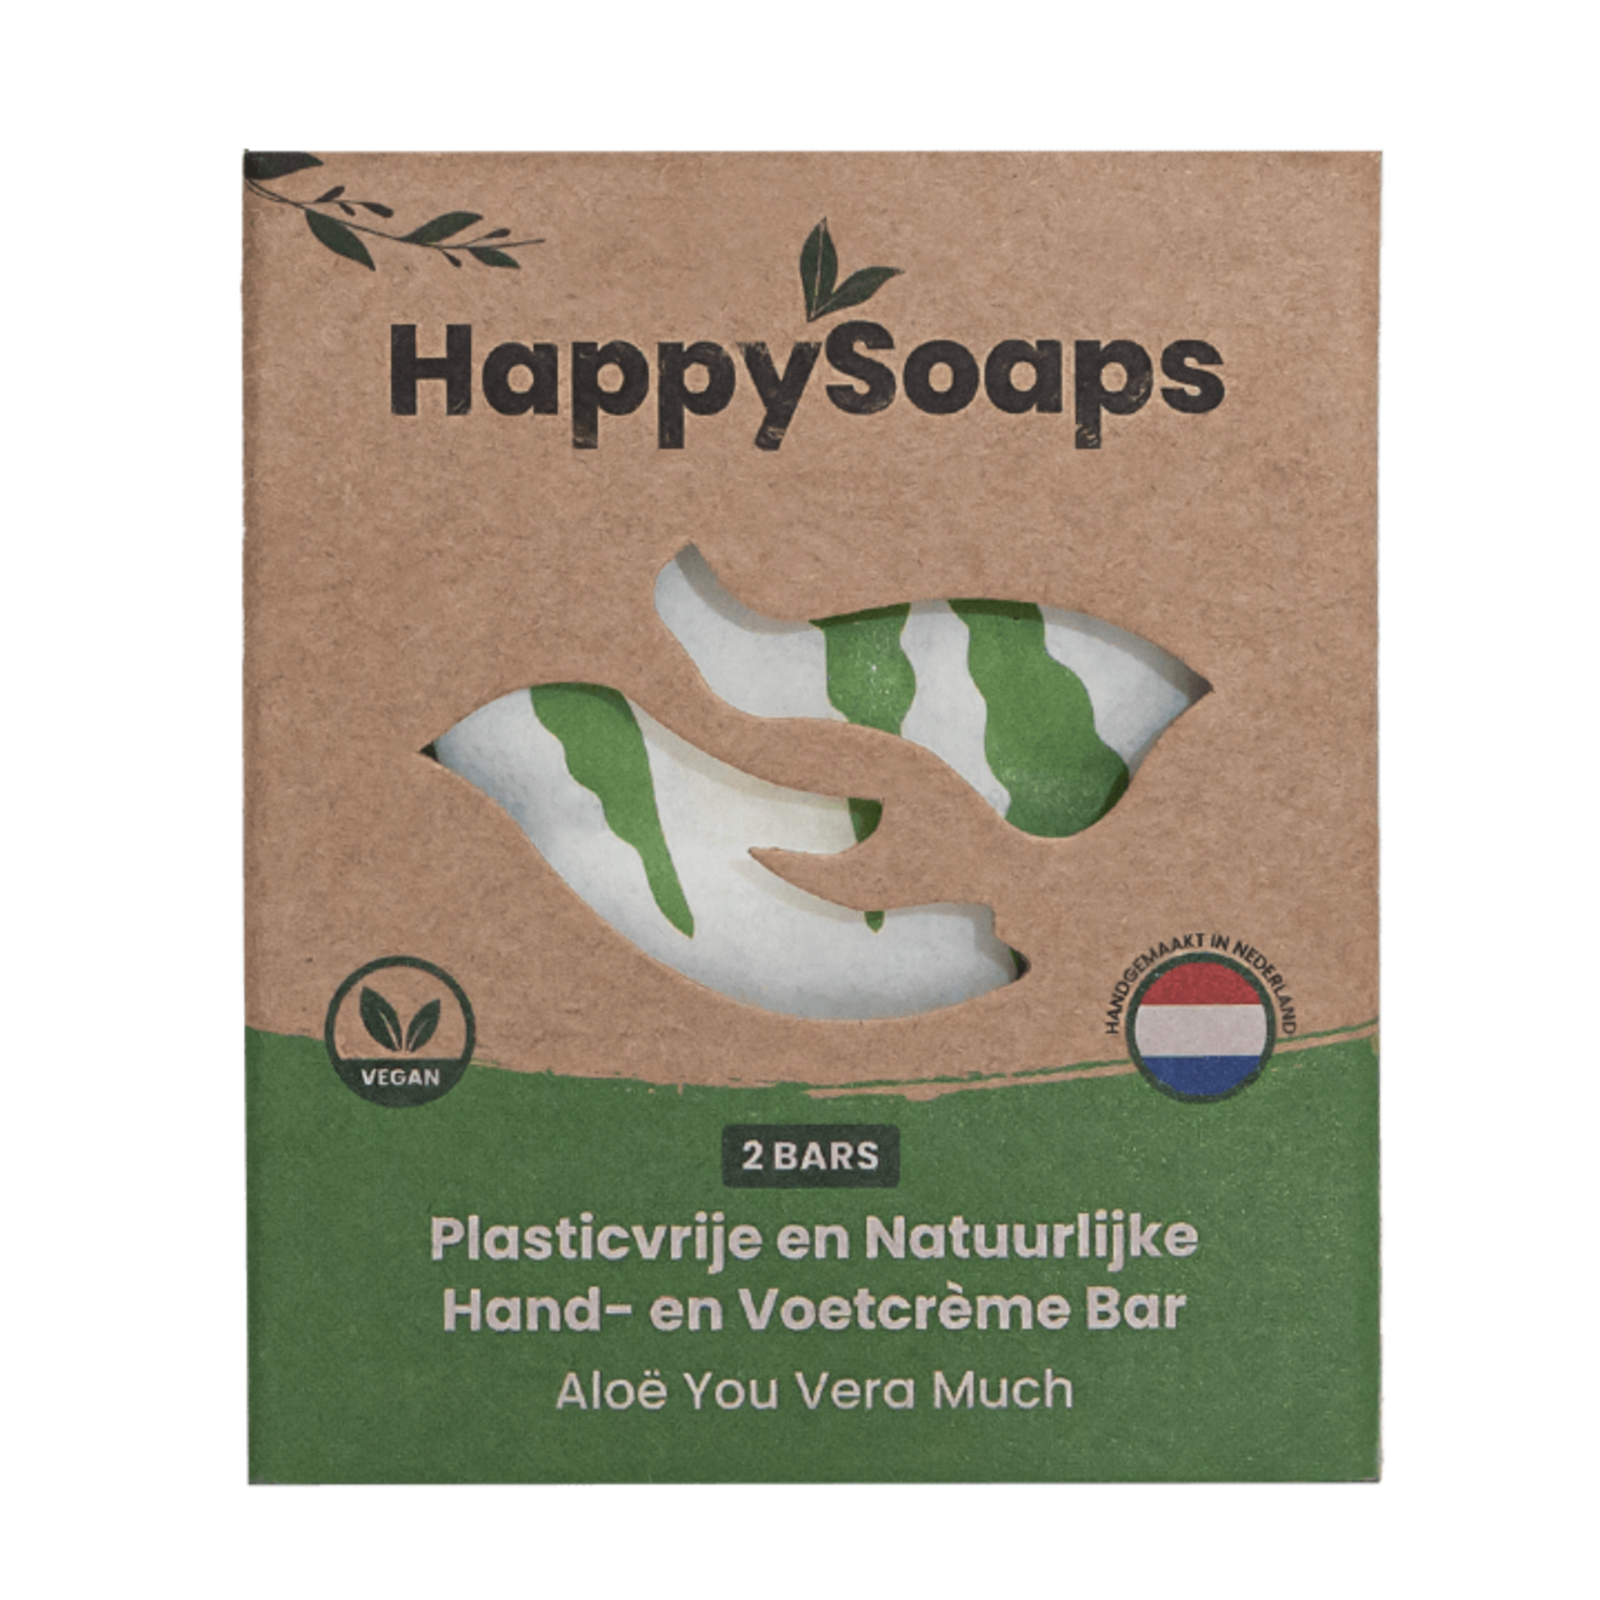 Happy soaps Hand- en voetcreme - Aloë You Vera Much